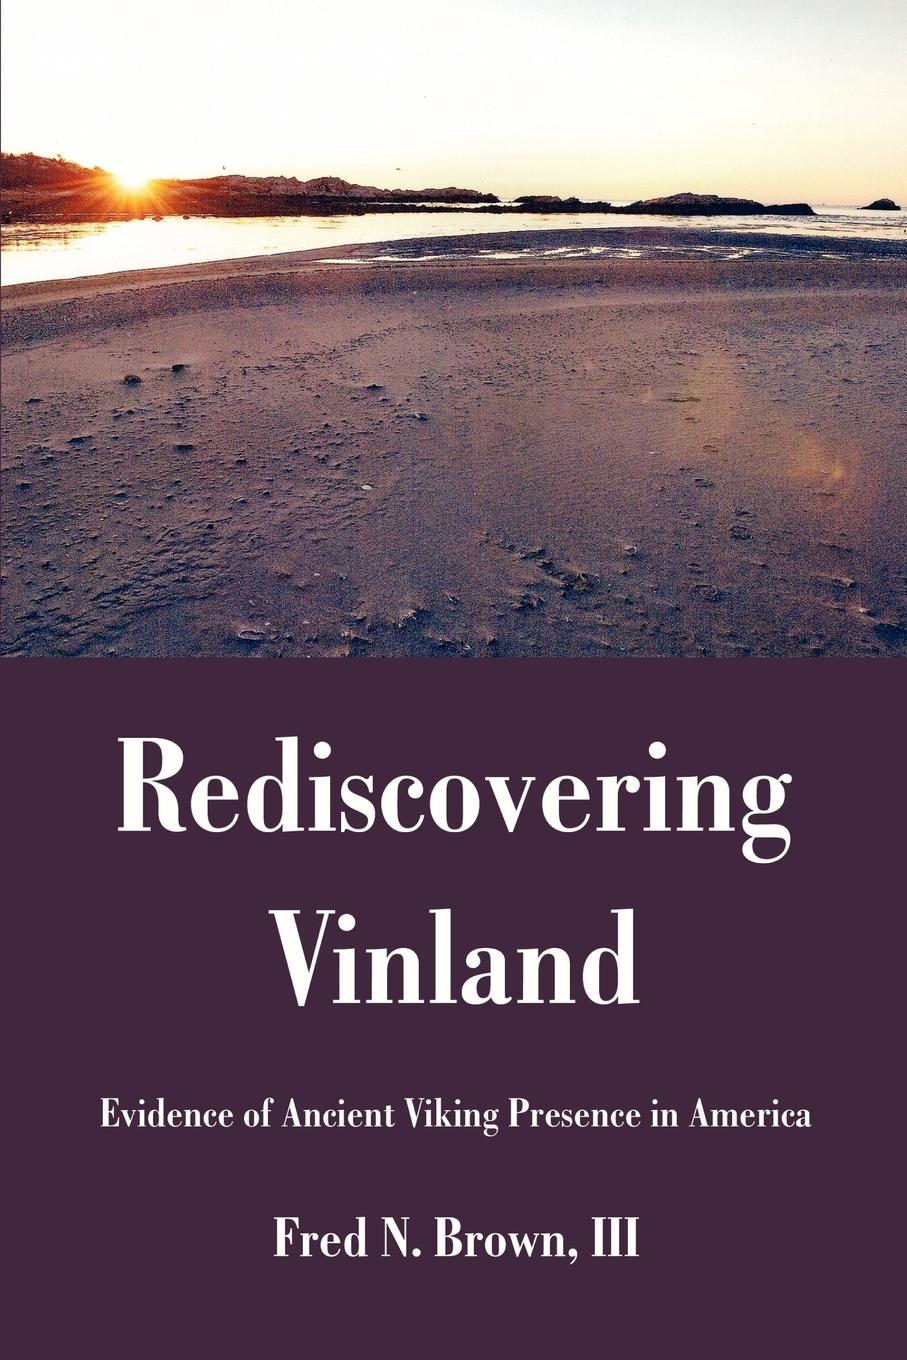 Rediscovering Vinland - Brown, III Fred N.